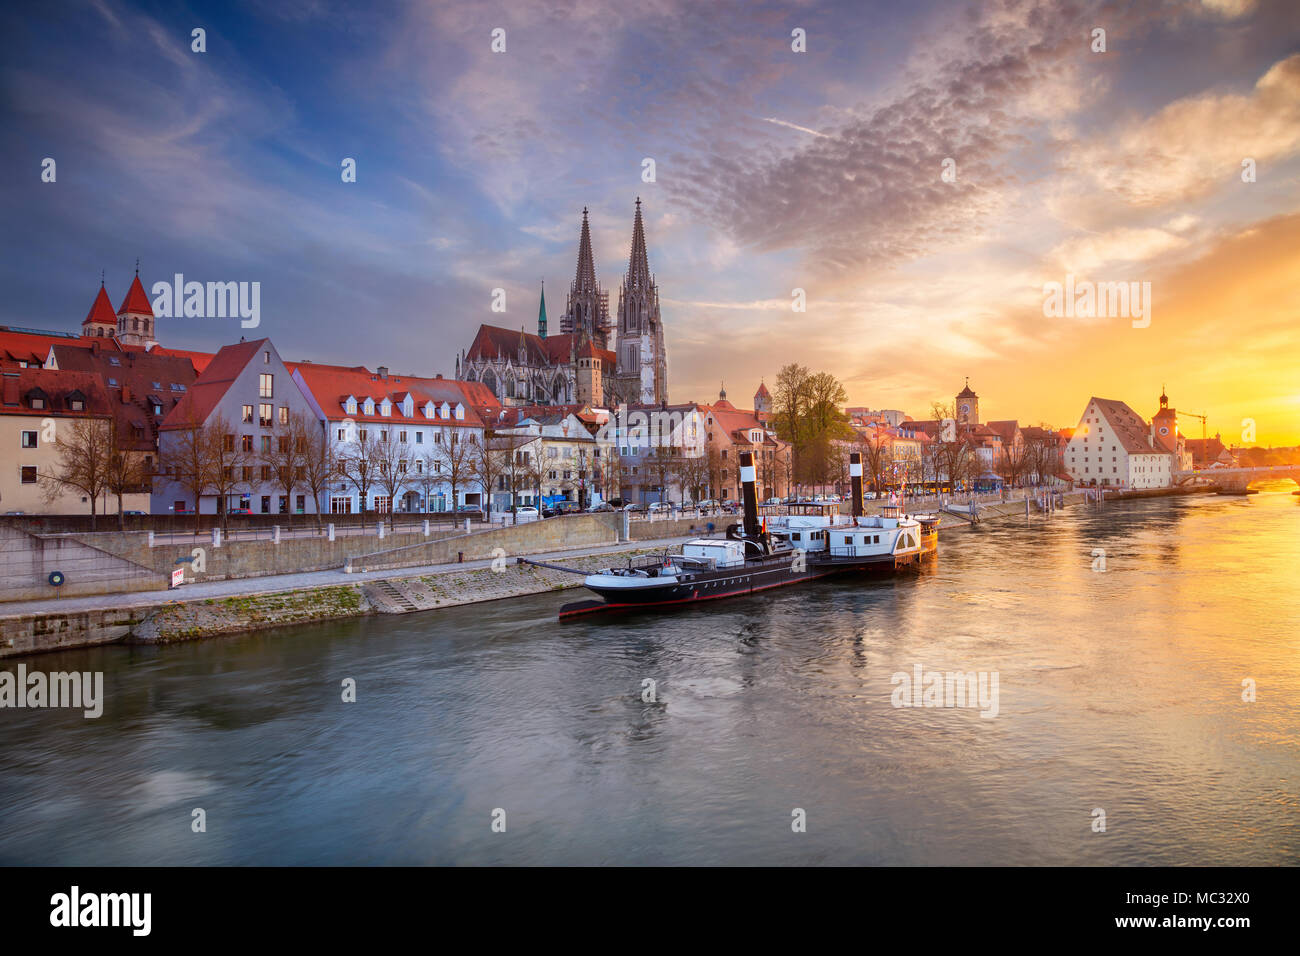 Regensburg. Imagen del paisaje urbano de Regensburg, Alemania durante la primavera del atardecer. Foto de stock